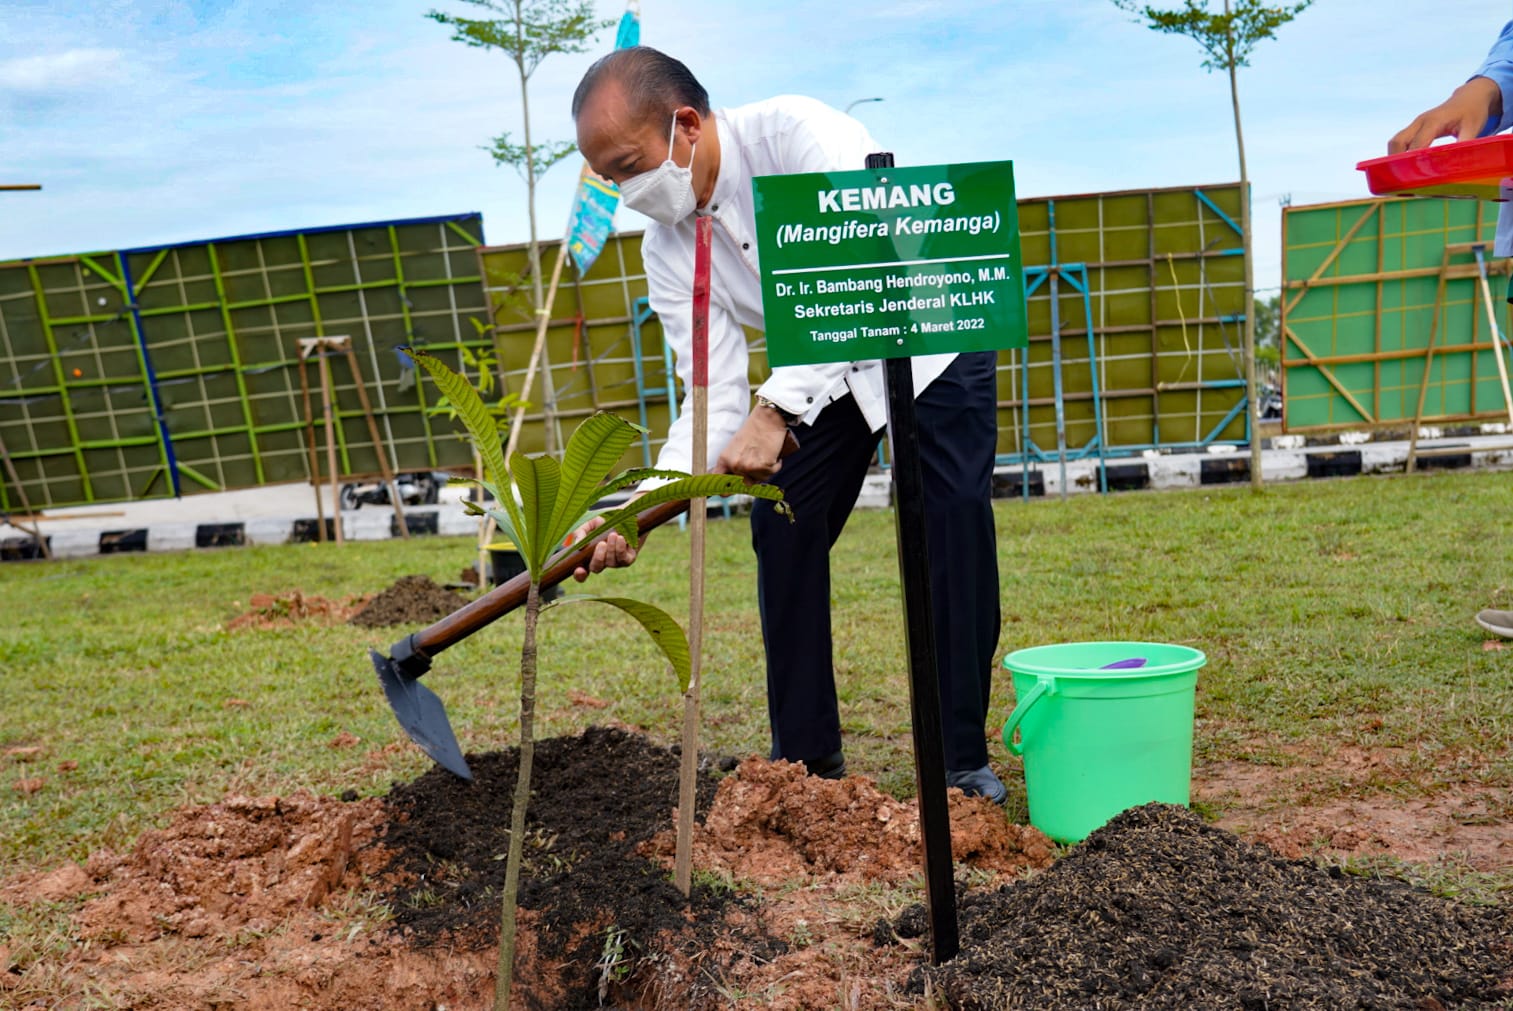 Kementerian Lingkungan Hidup dan Kehutanan Lakukan Penanaman Pohon Serentak di Seluruh Indonesia untuk Mitigasi Perubahan Iklim